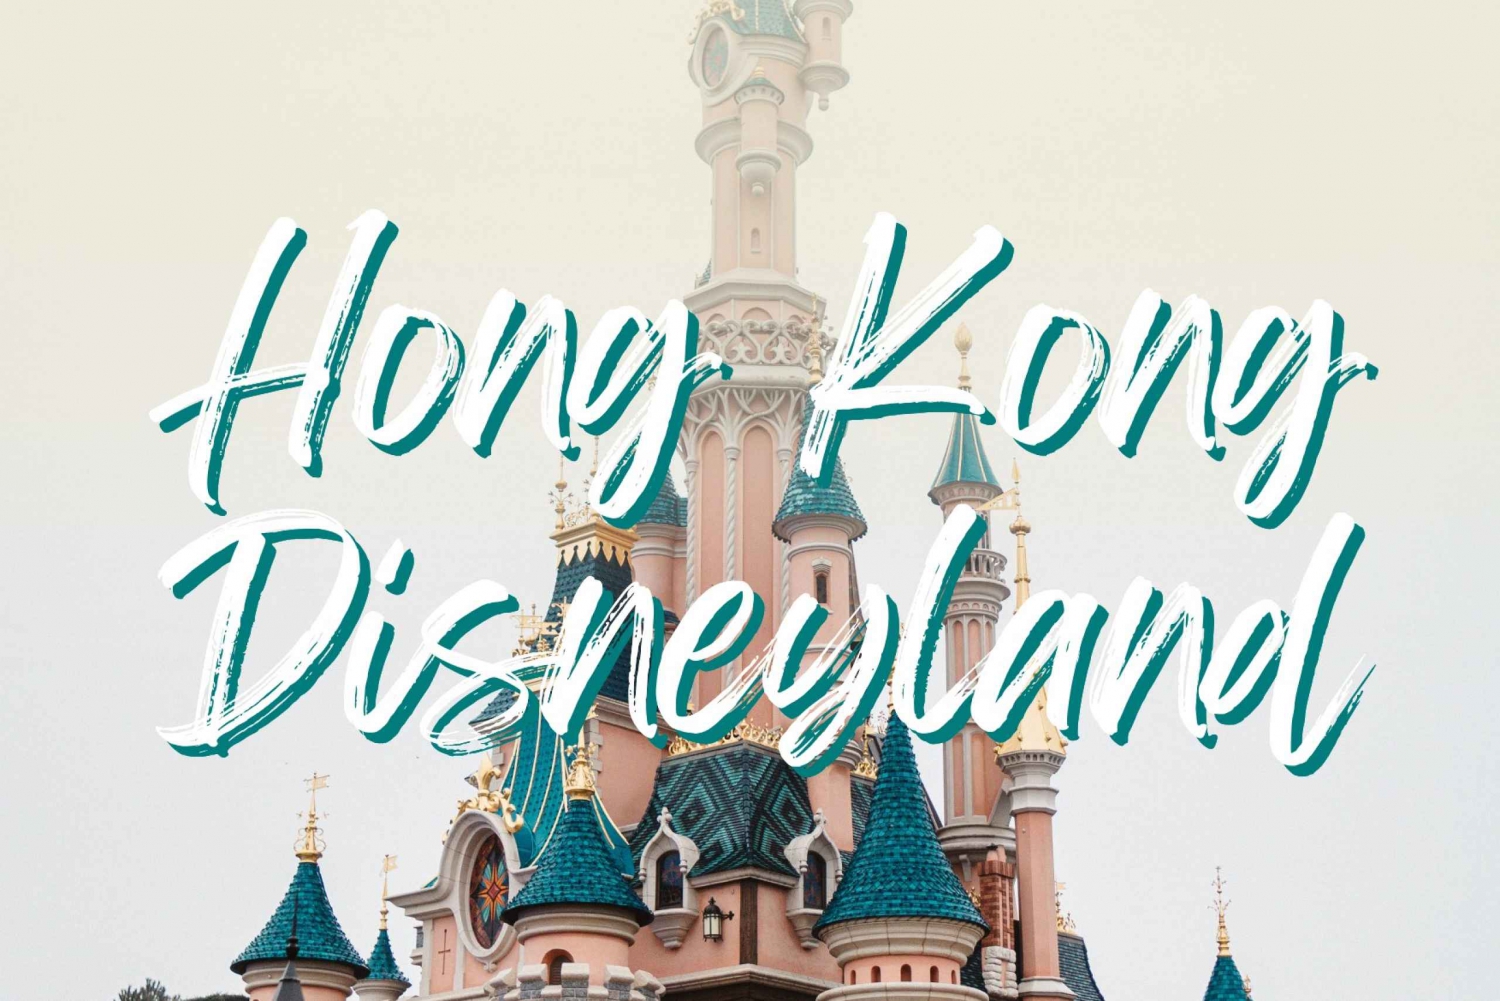 Paquete Hong Kong 2: Disneylandia con tour de la ciudad gratuito